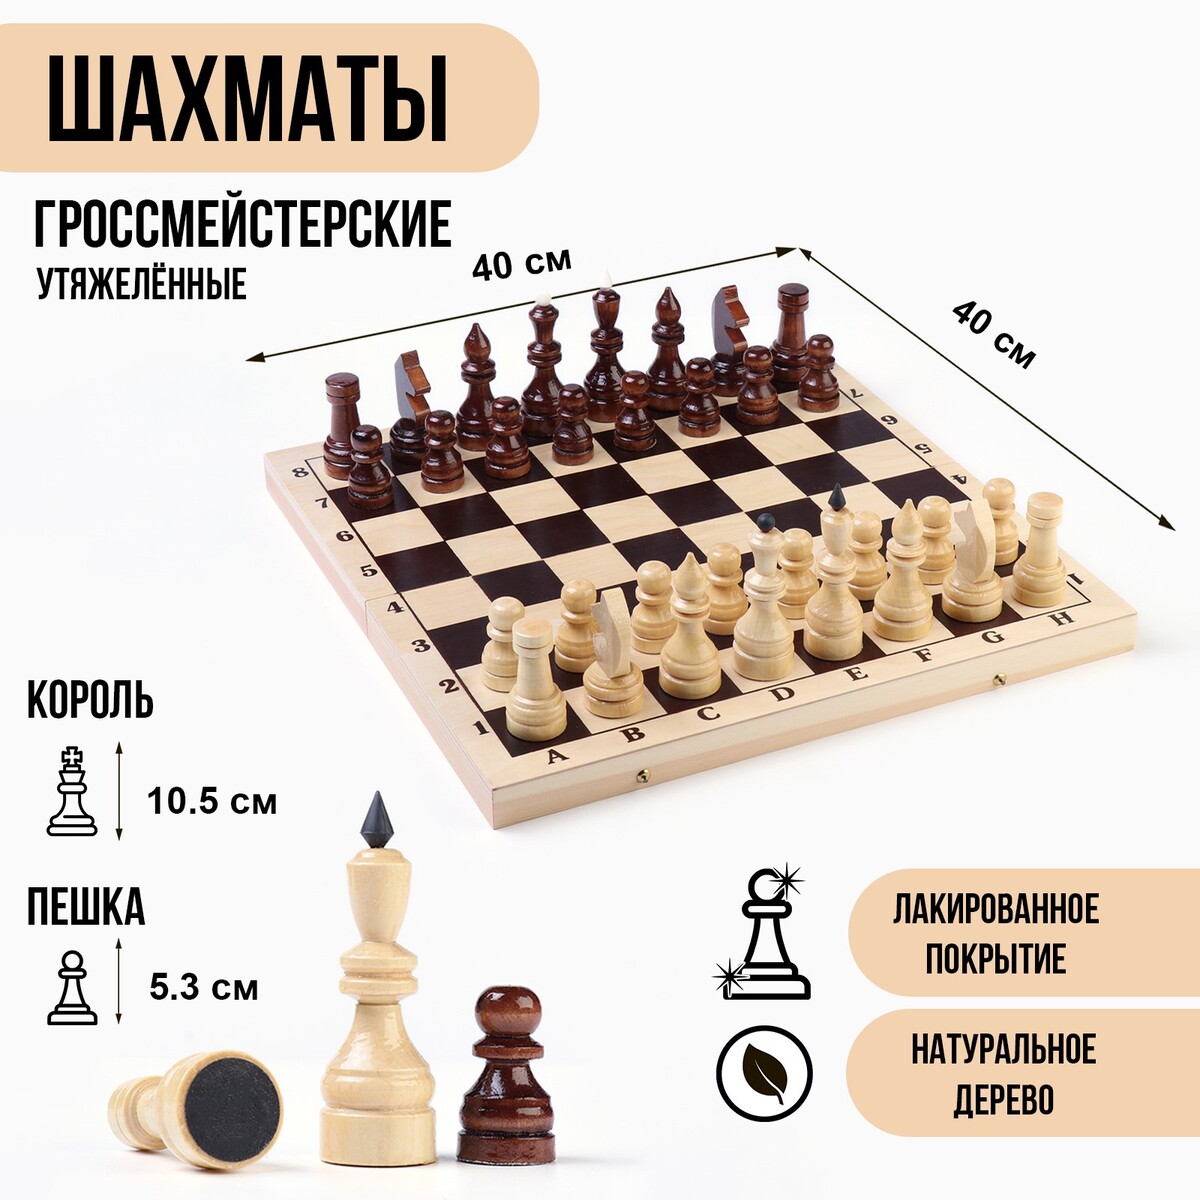 Шахматы гроссмейстерские, турнирные, утяжеленные, 40х40 см, король h=10.5 см, пешка 5.3 см король и император